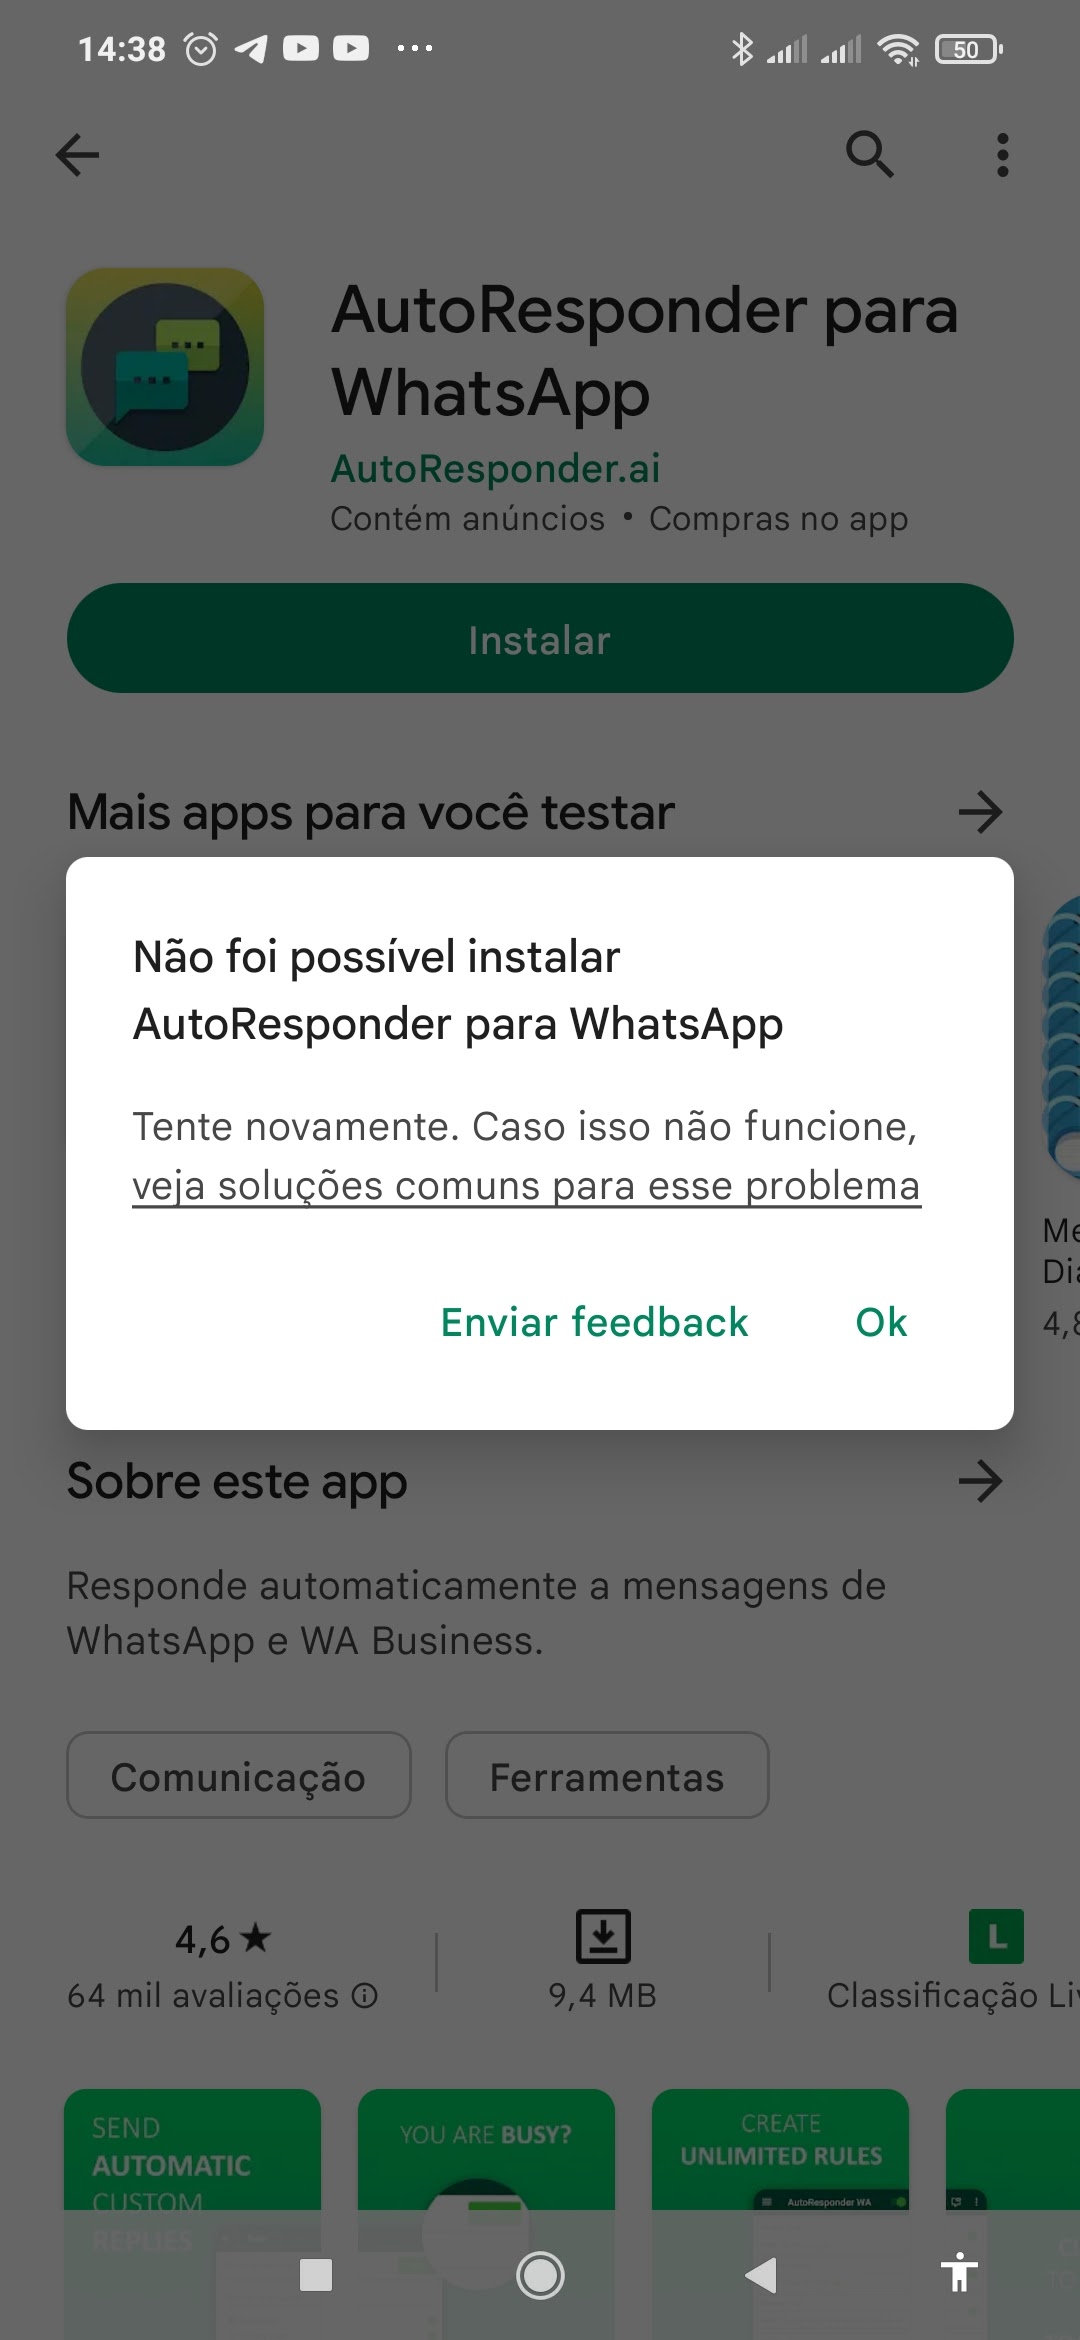 Não é possível instalar/atualizar apps na Play Store - Comunidade Google  Play